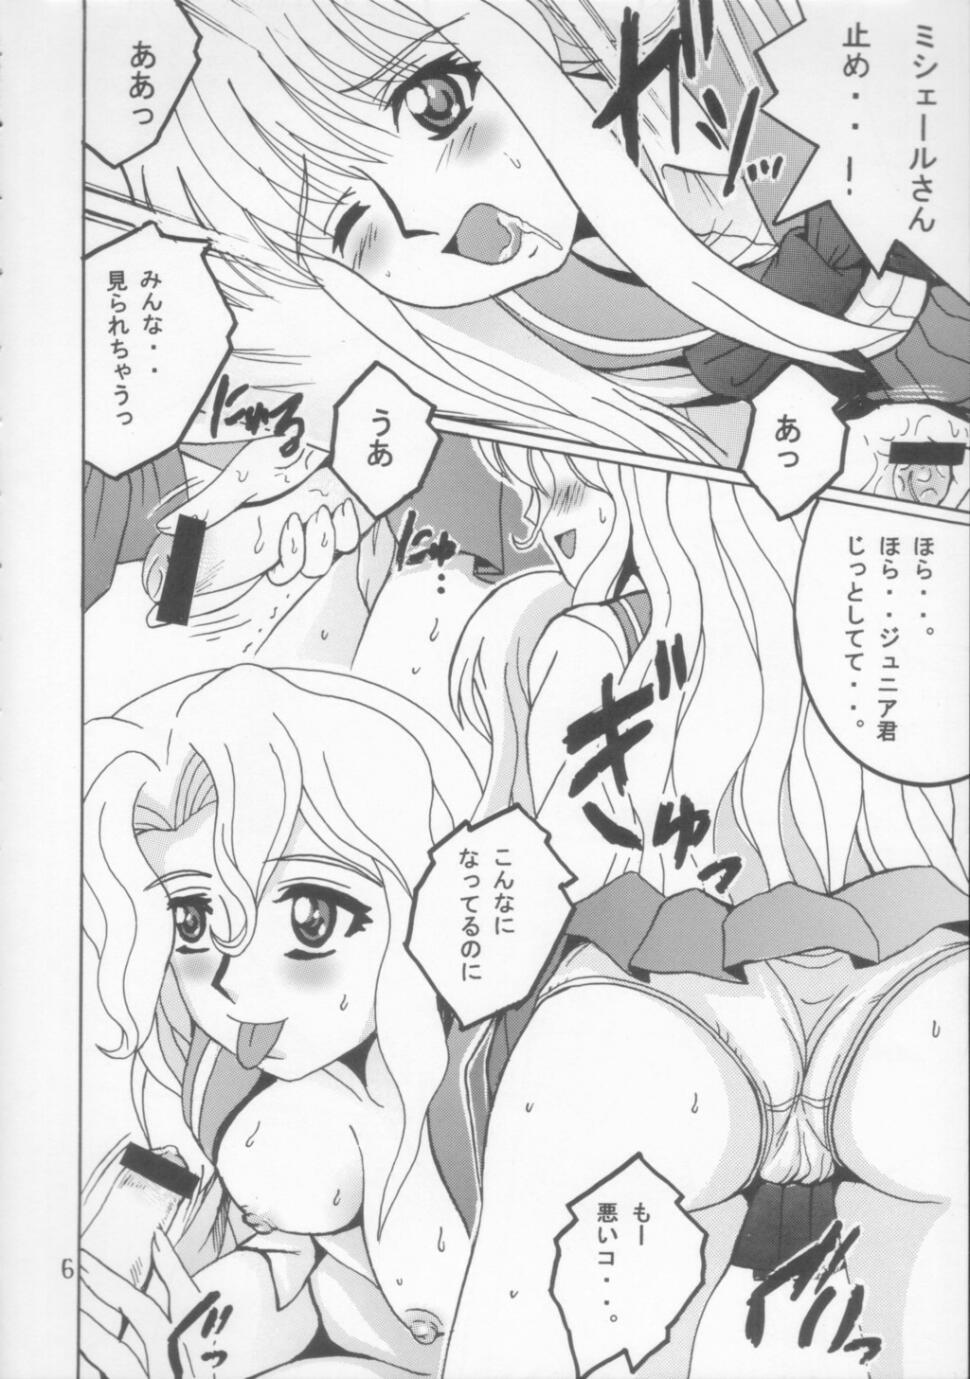 Camporn SHIO! Vol. 21 - Read or die Lady - Page 5